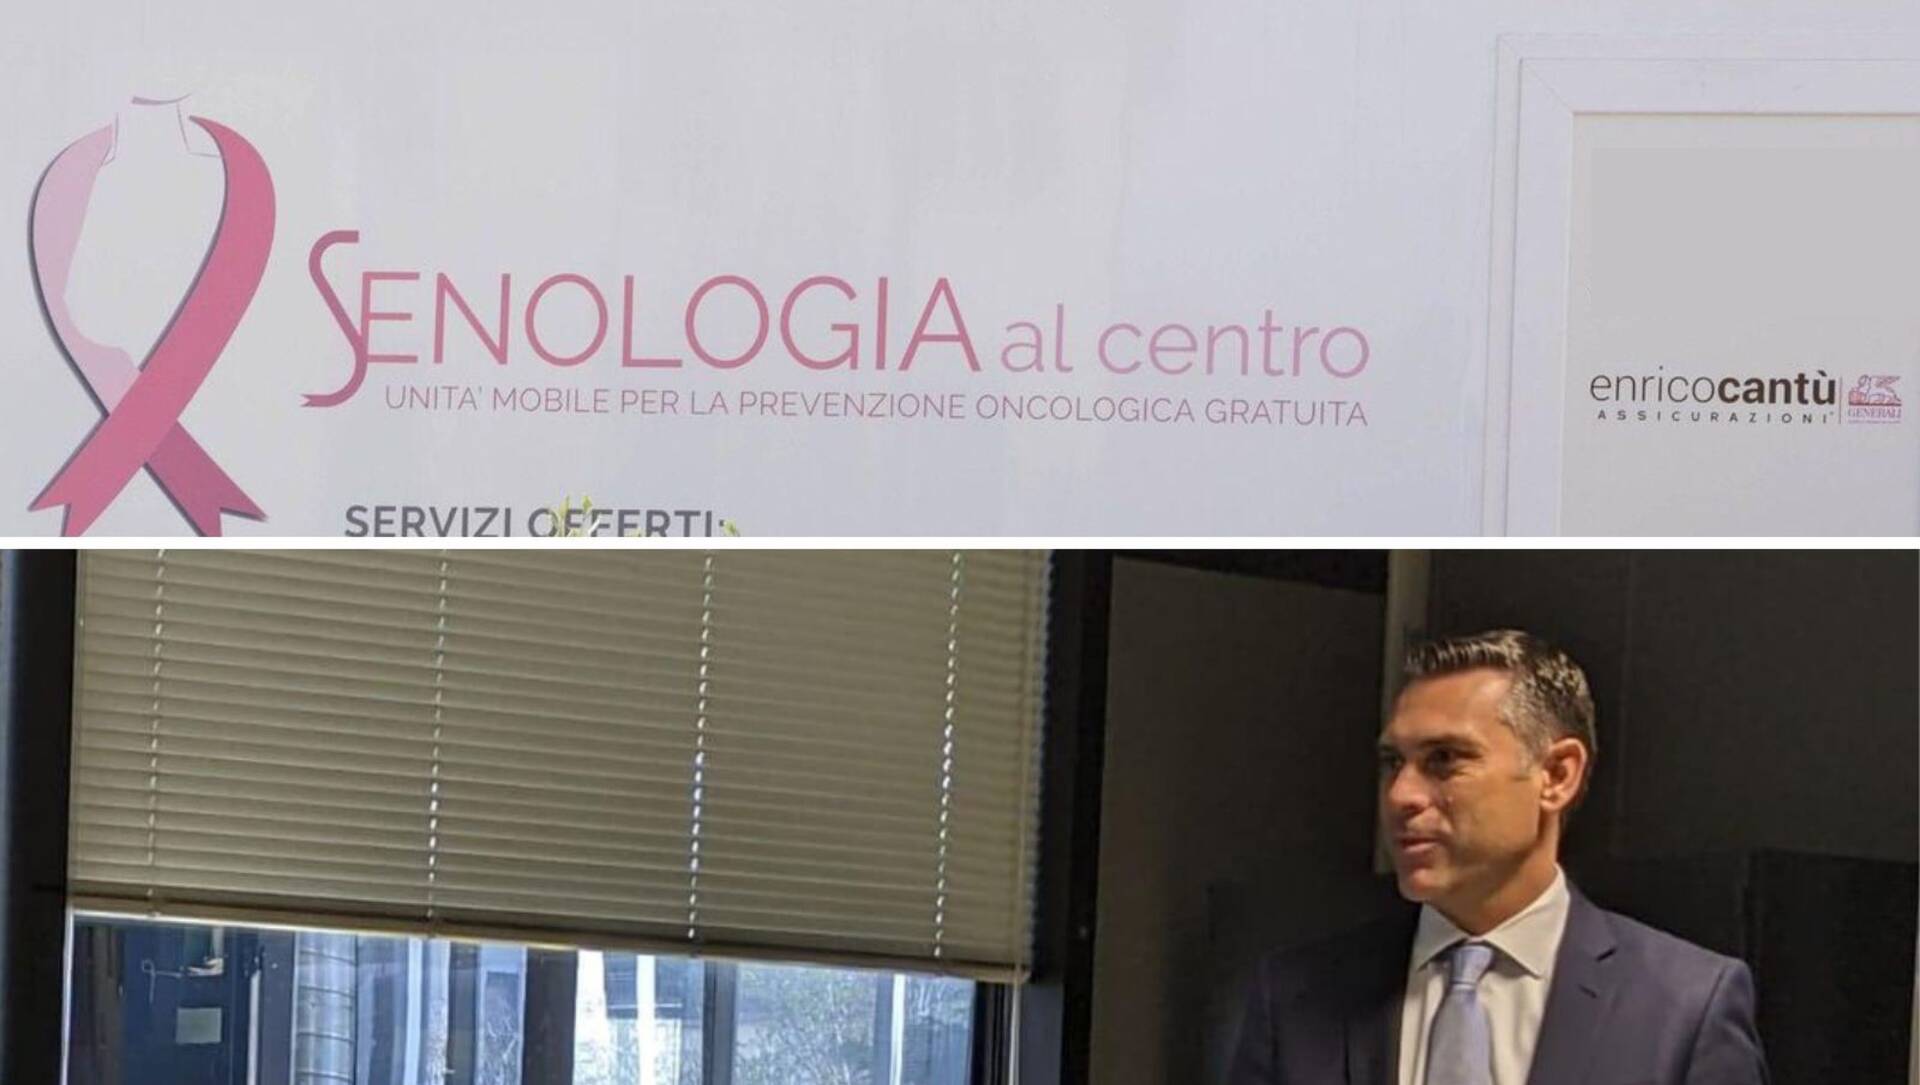 Enrico Cantù Assicurazioni sostiene “Senologia al Centro”: un’iniziativa per la prevenzione del tumore al seno